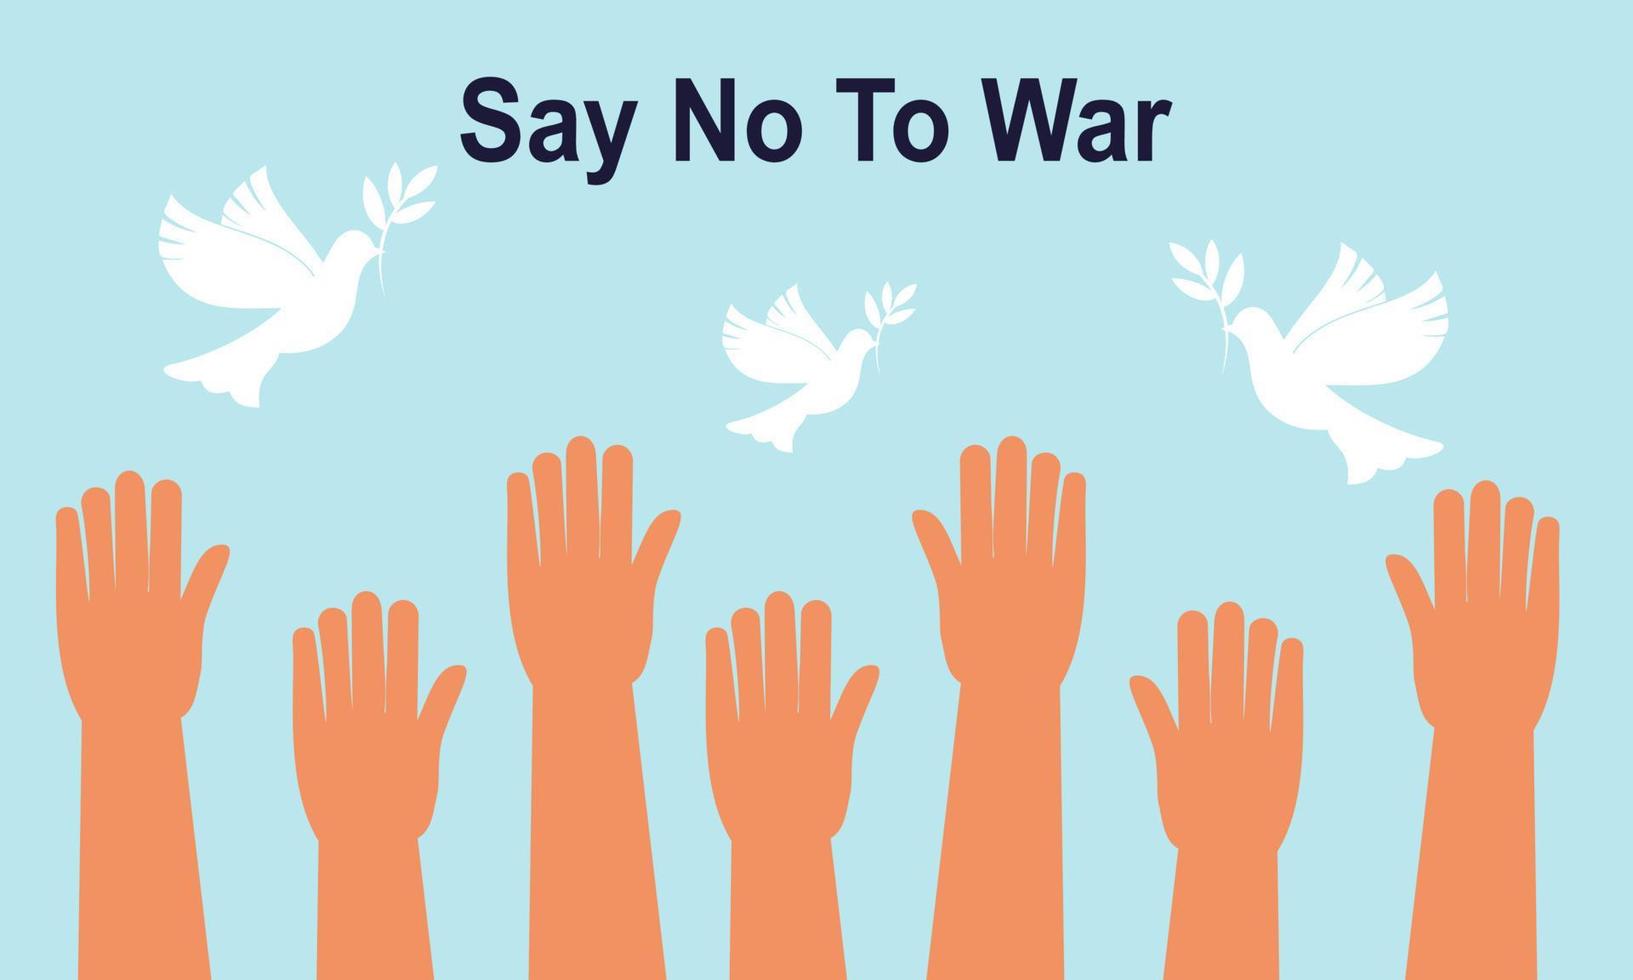 Menschen sind gegen Krieg. Sag Nein zum Krieg. Frieden für die Weltillustration vektor